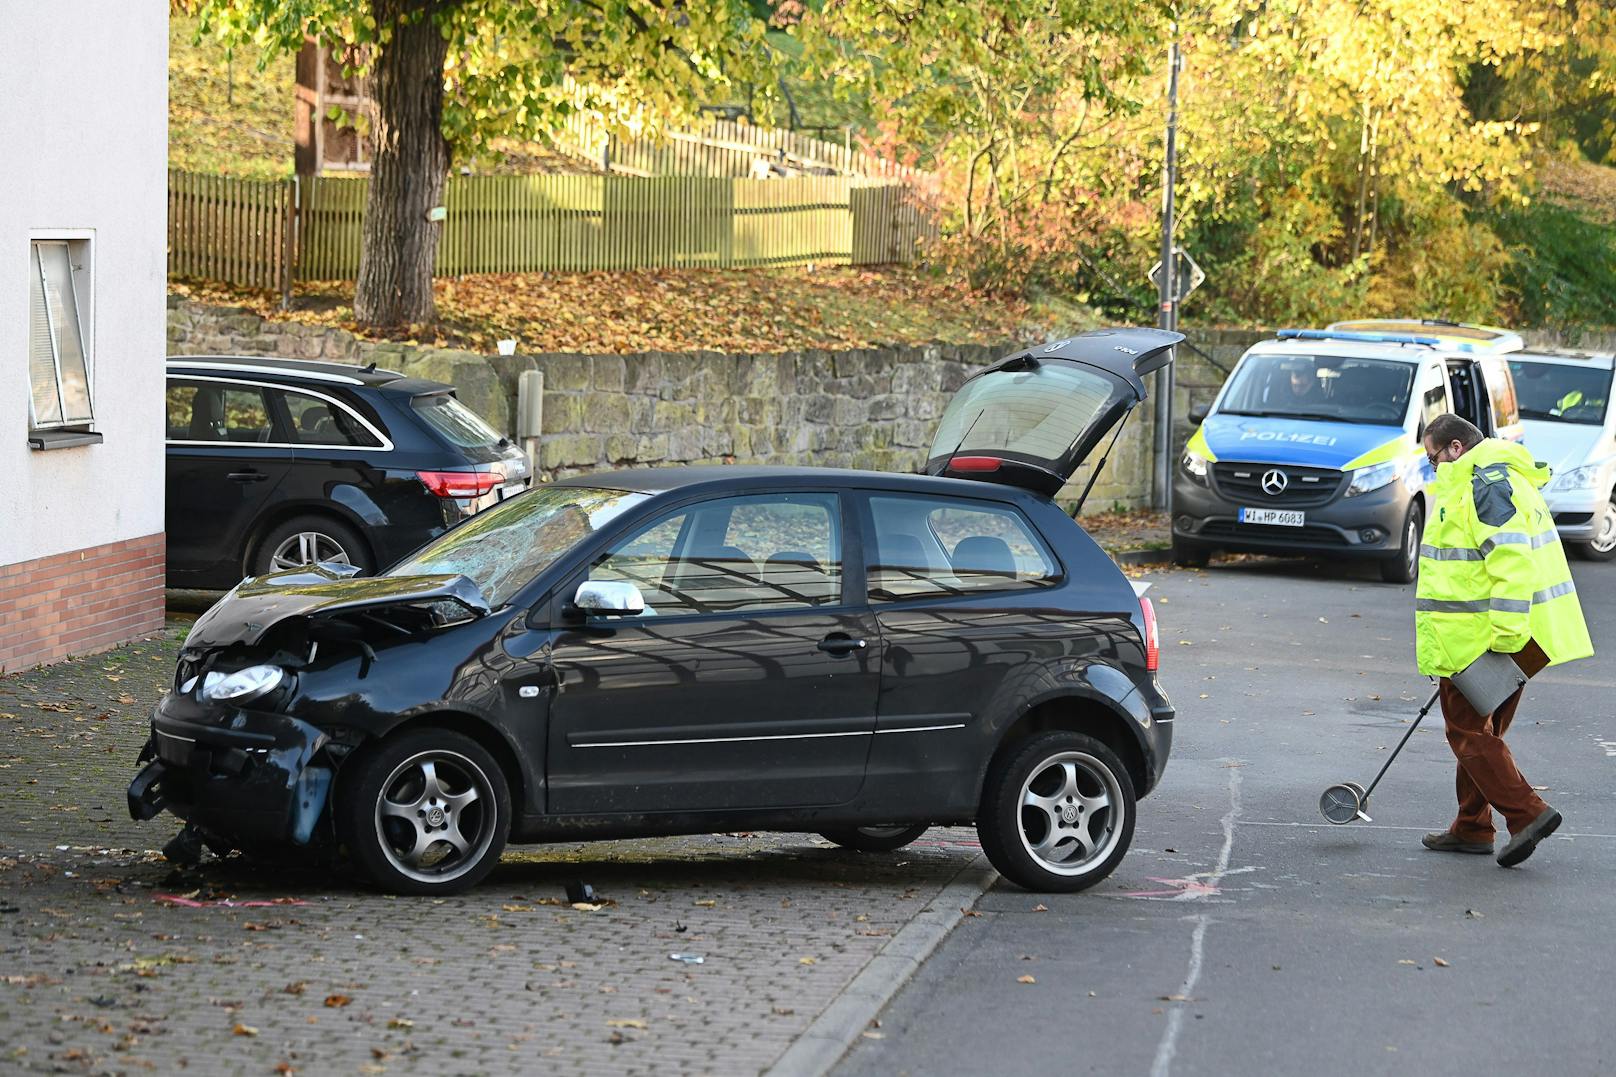 Hessen, Witzenhausen: ein schwarzer VW Polo raste am 29. Oktober in eine Gruppe Kinder, <a data-li-document-ref="100171101" href="https://www.heute.at/g/mann-rast-in-gruppe-von-schulkindern-8-jaehrige-tot-100171101">tötete eine 8-Jährige</a>.